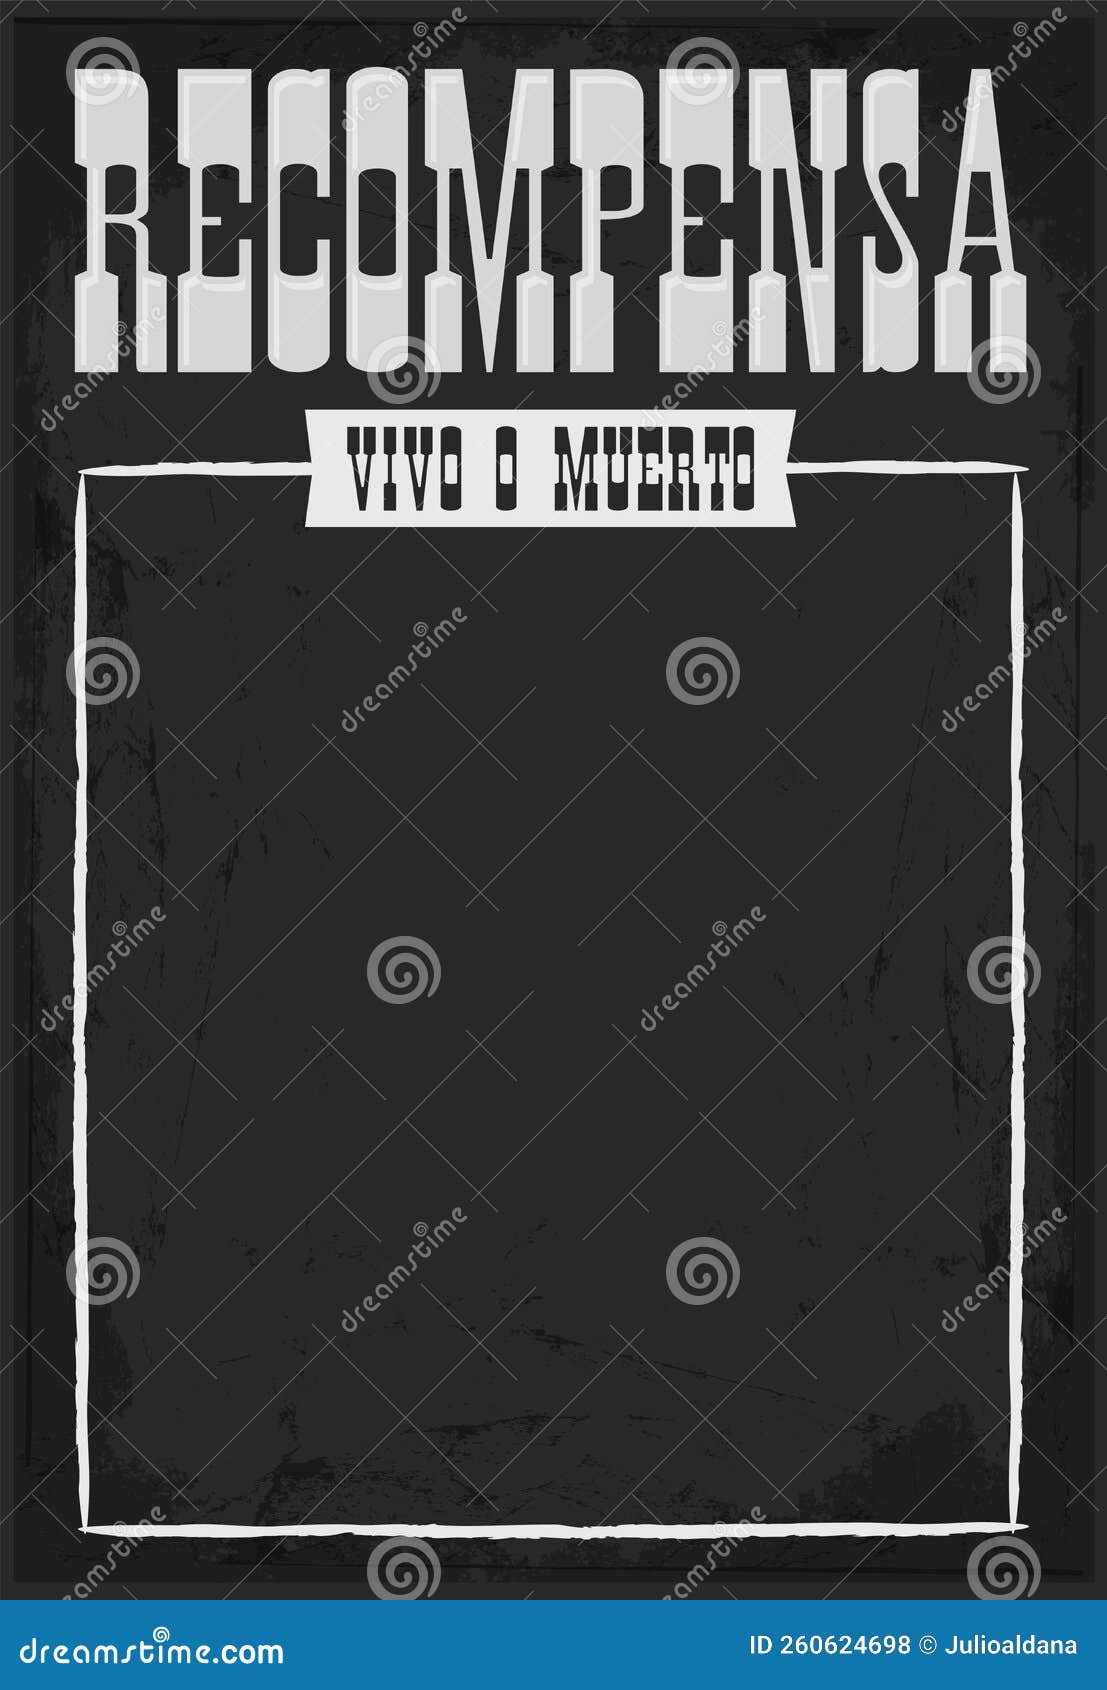 recompensa vivo o muerto, reward dead or alive poster spanish text